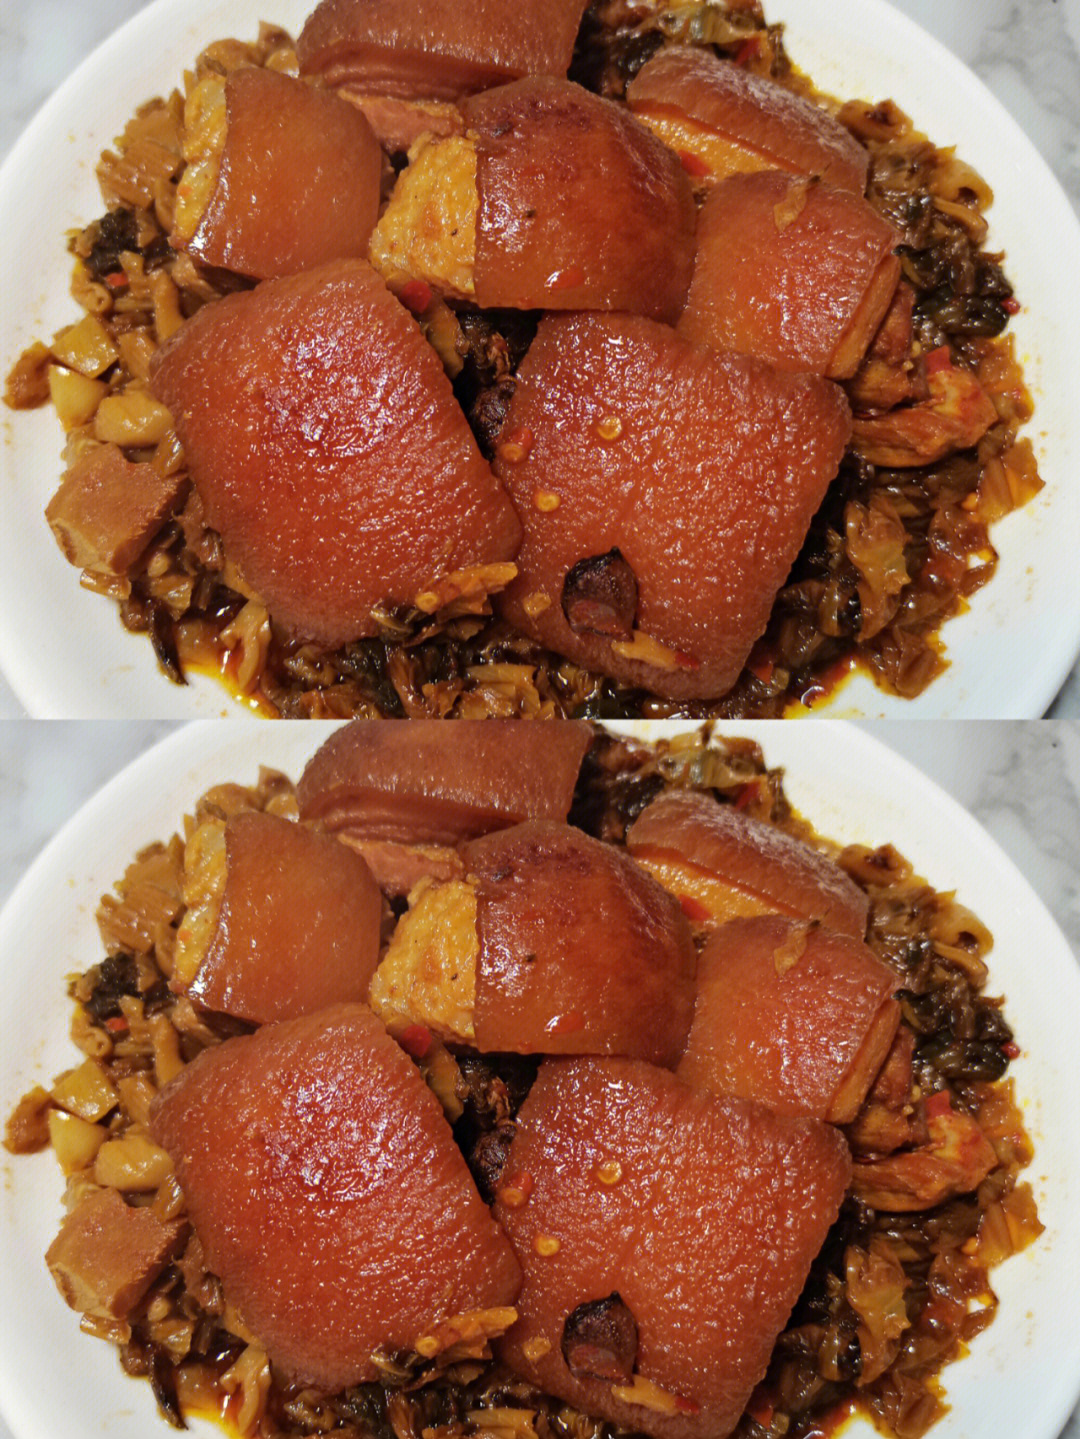 四川坨子肉的做法图片图片